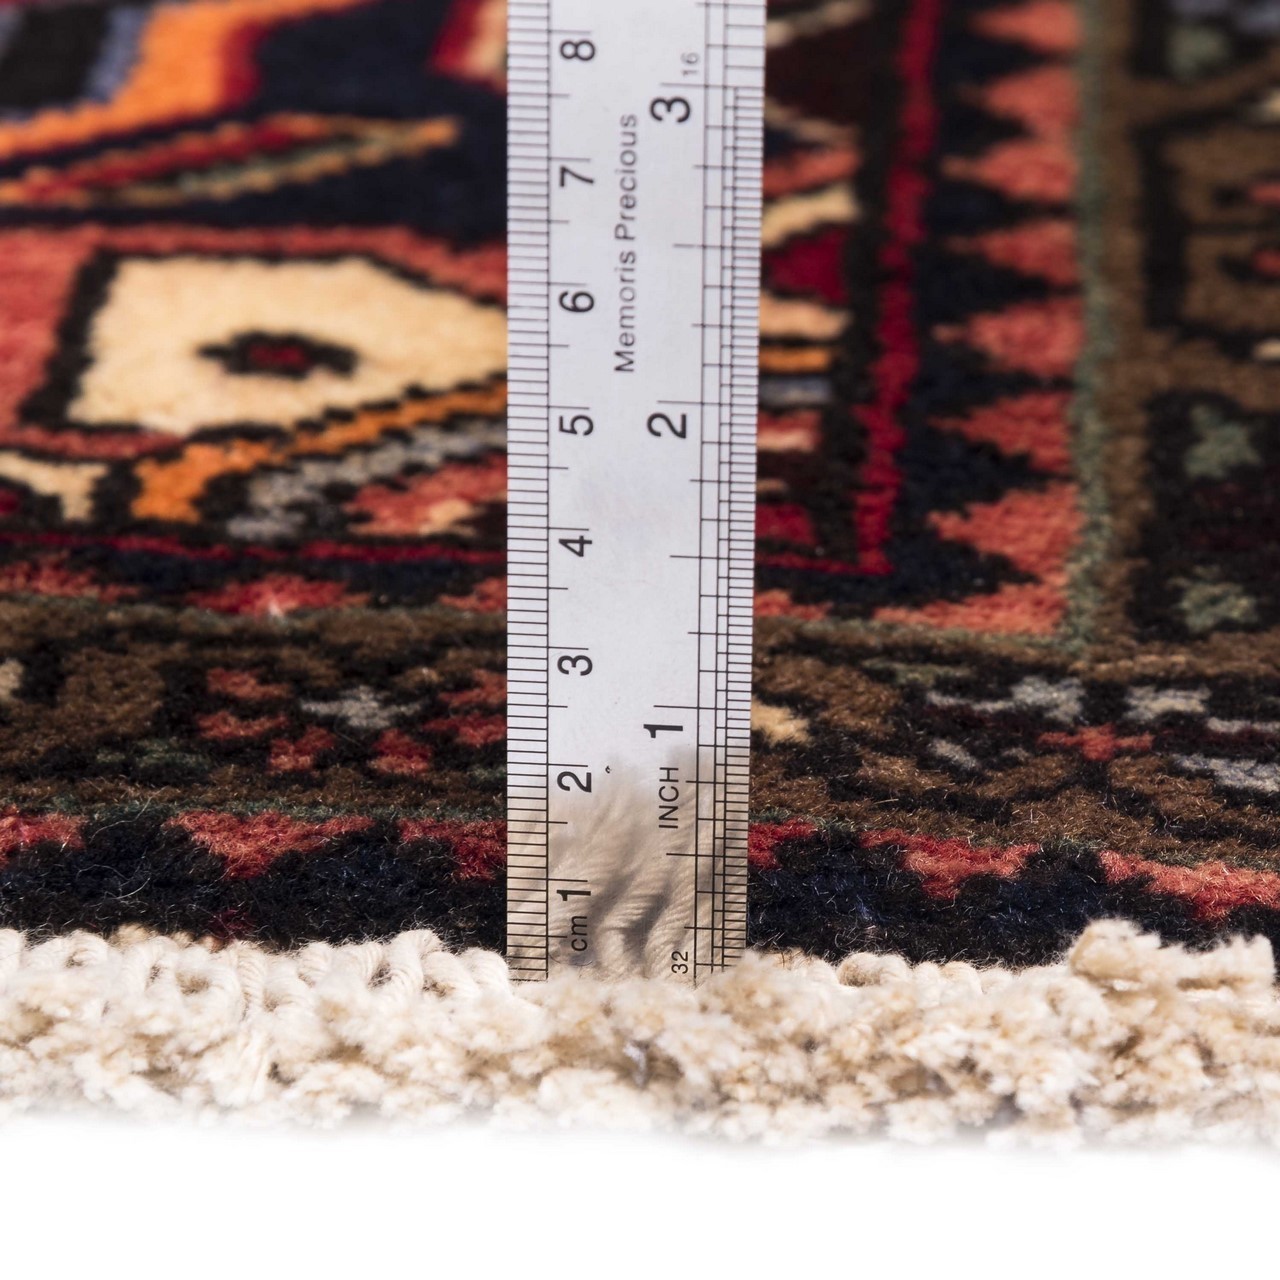 伊朗手工地毯编号 160011